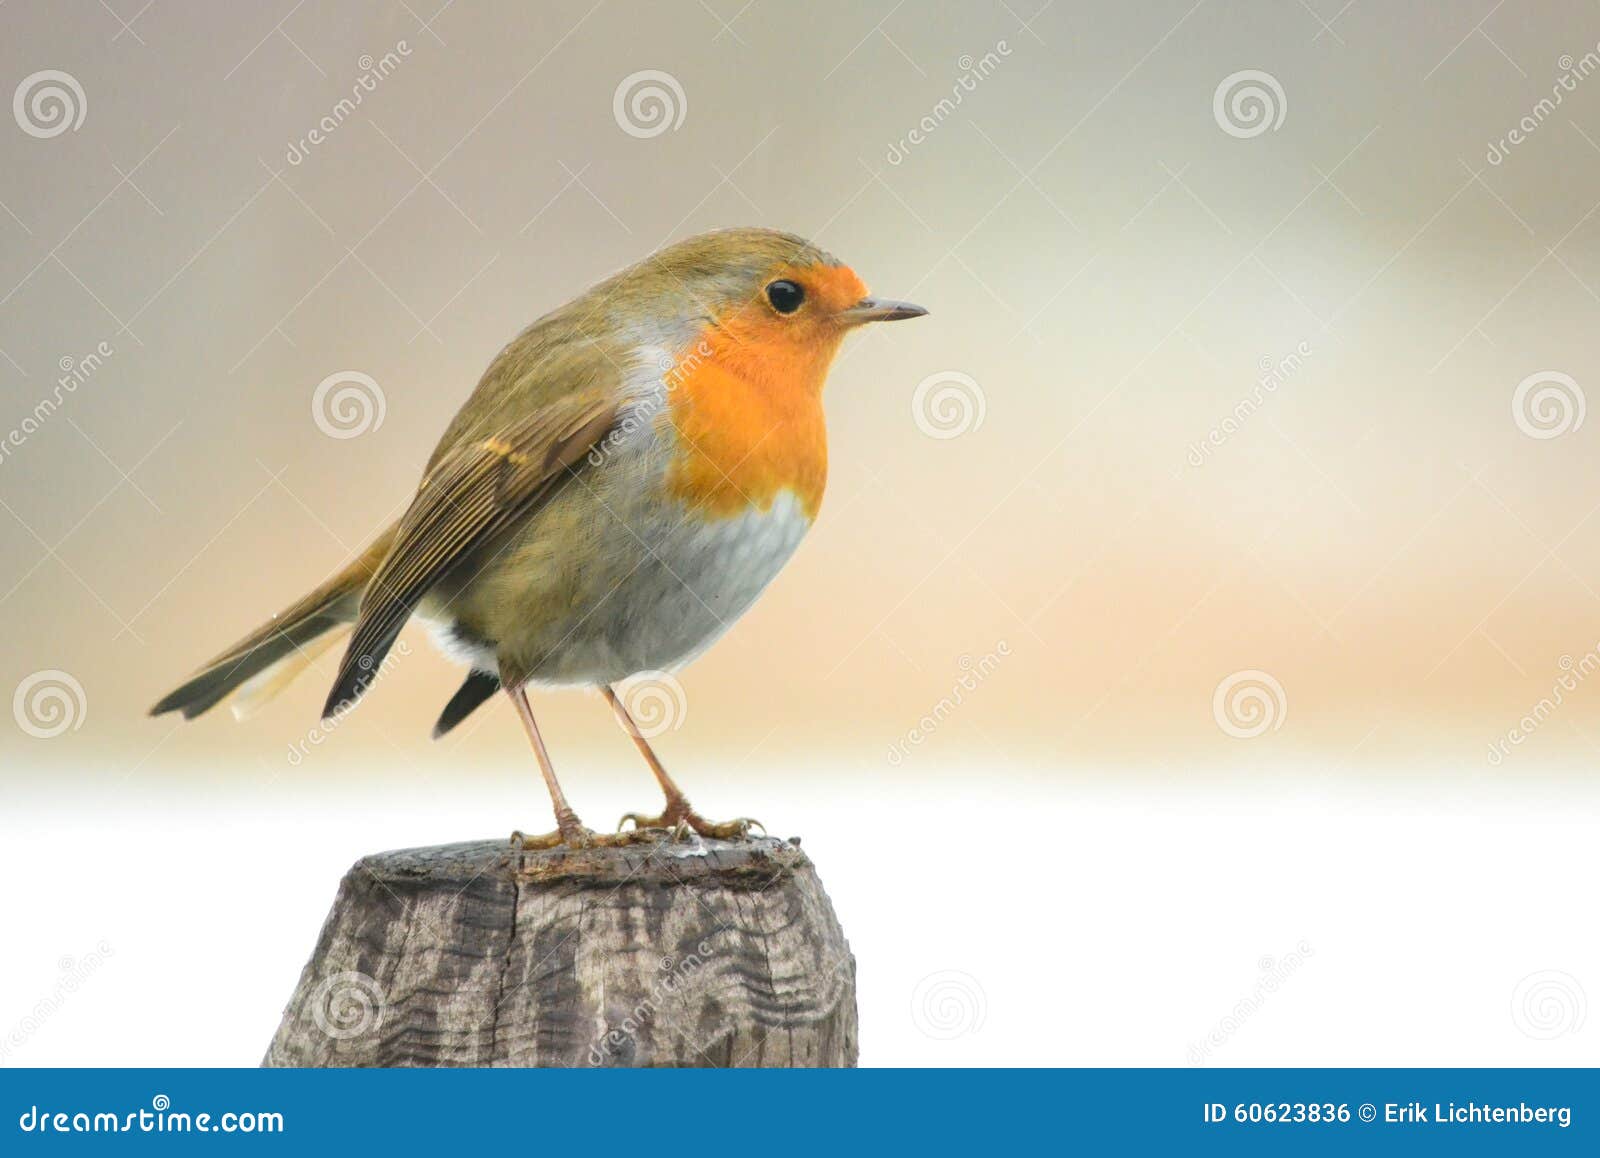 robin bird on a pole